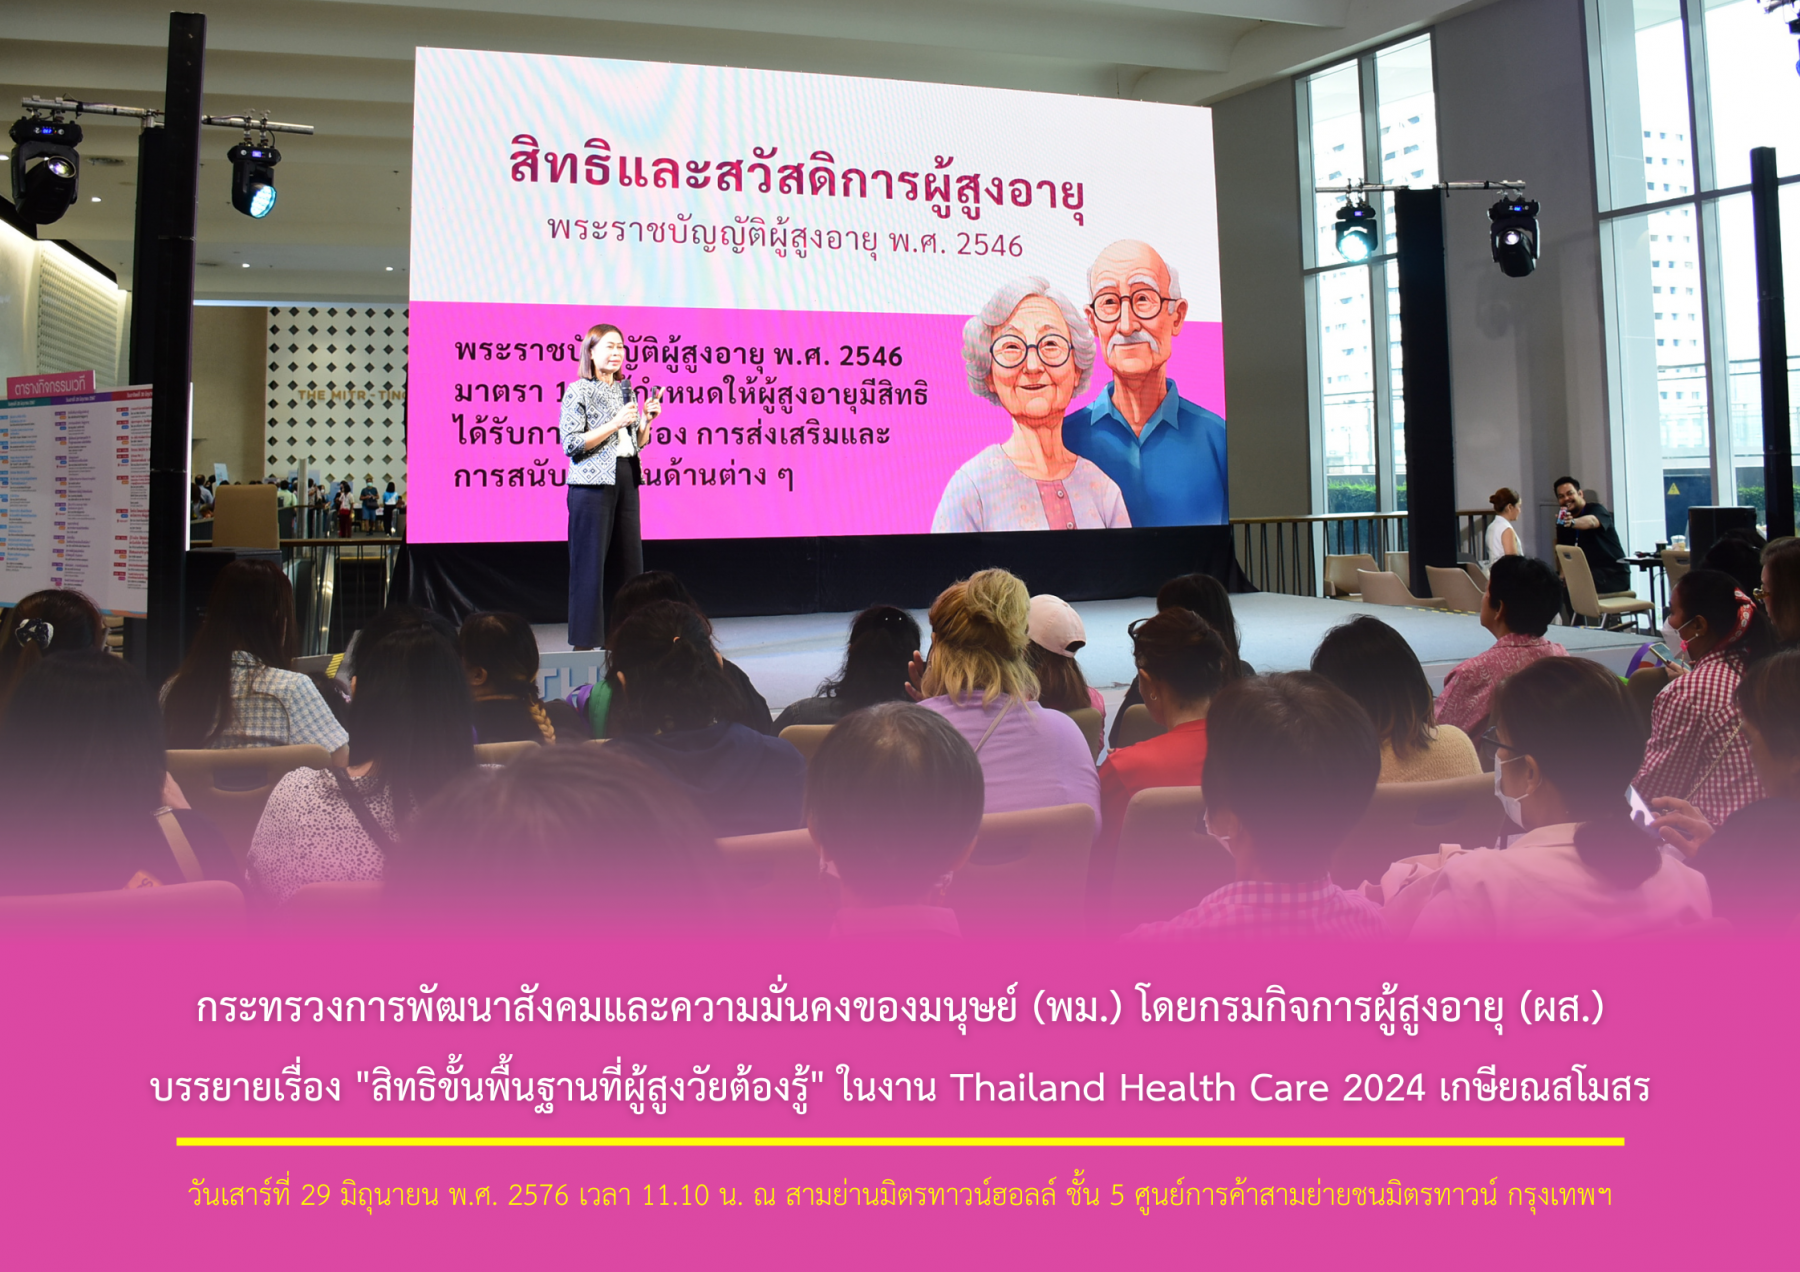 กระทรวงการพัฒนาสังคมและความมั่นคงของมนุษย์ (พม.) โดยกรมกิจการผู้สูงอายุ (ผส.) บรรยายเรื่อง "สิทธิขั้นพื้นฐานที่ผู้สูงวัยต้องรู้" ในงาน Thailand Health Care 2024 เกษียณสโมสร